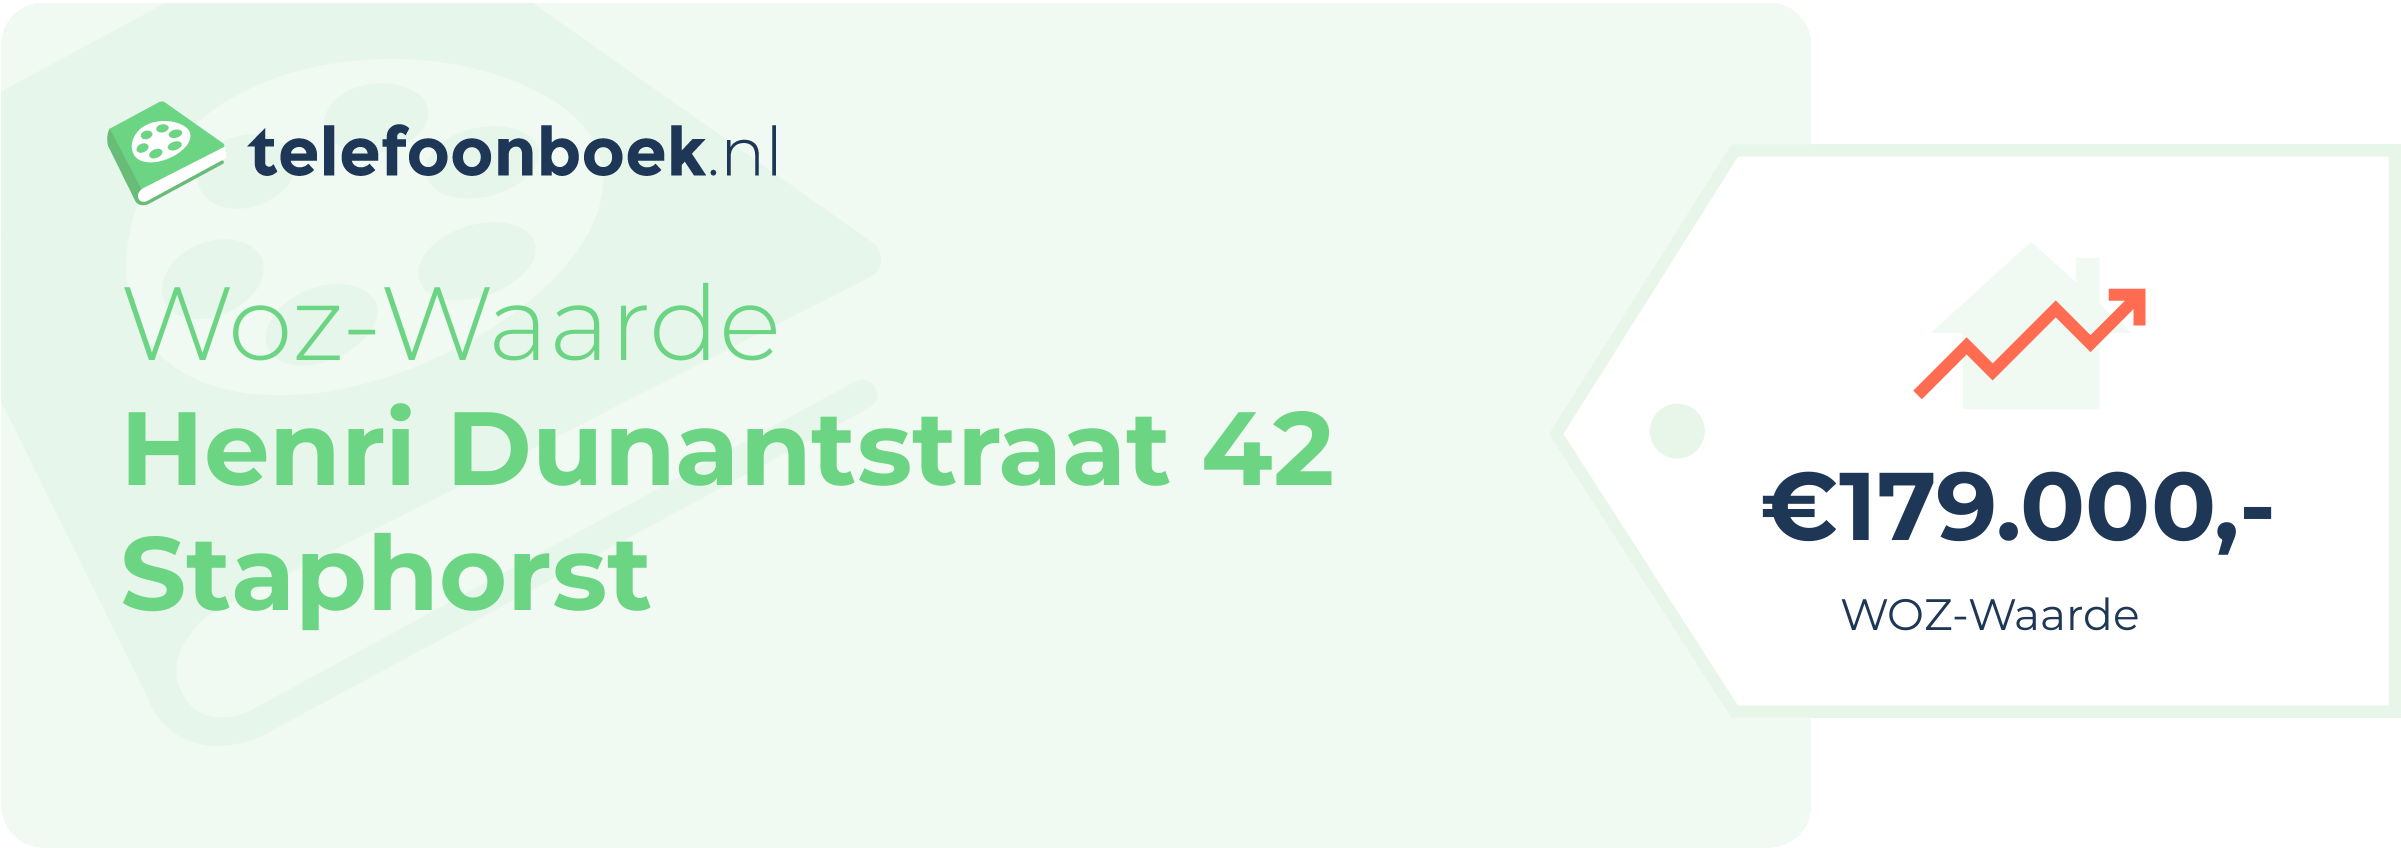 WOZ-waarde Henri Dunantstraat 42 Staphorst